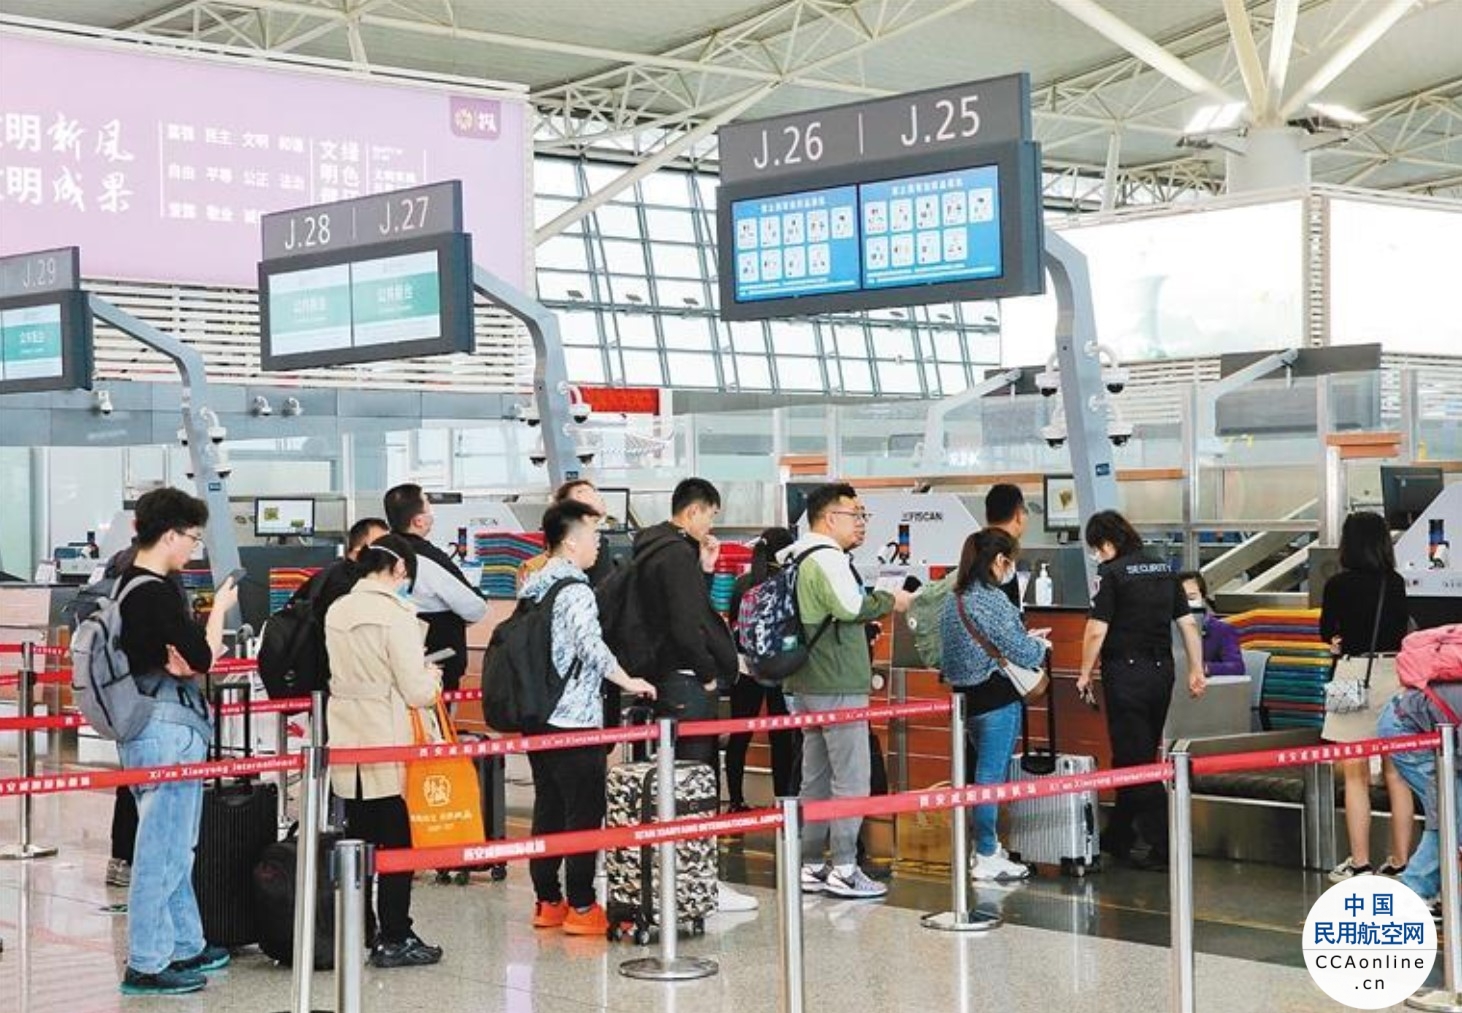 专属标识、客票延伸、行李运送……西安咸阳国际机场服务新升级